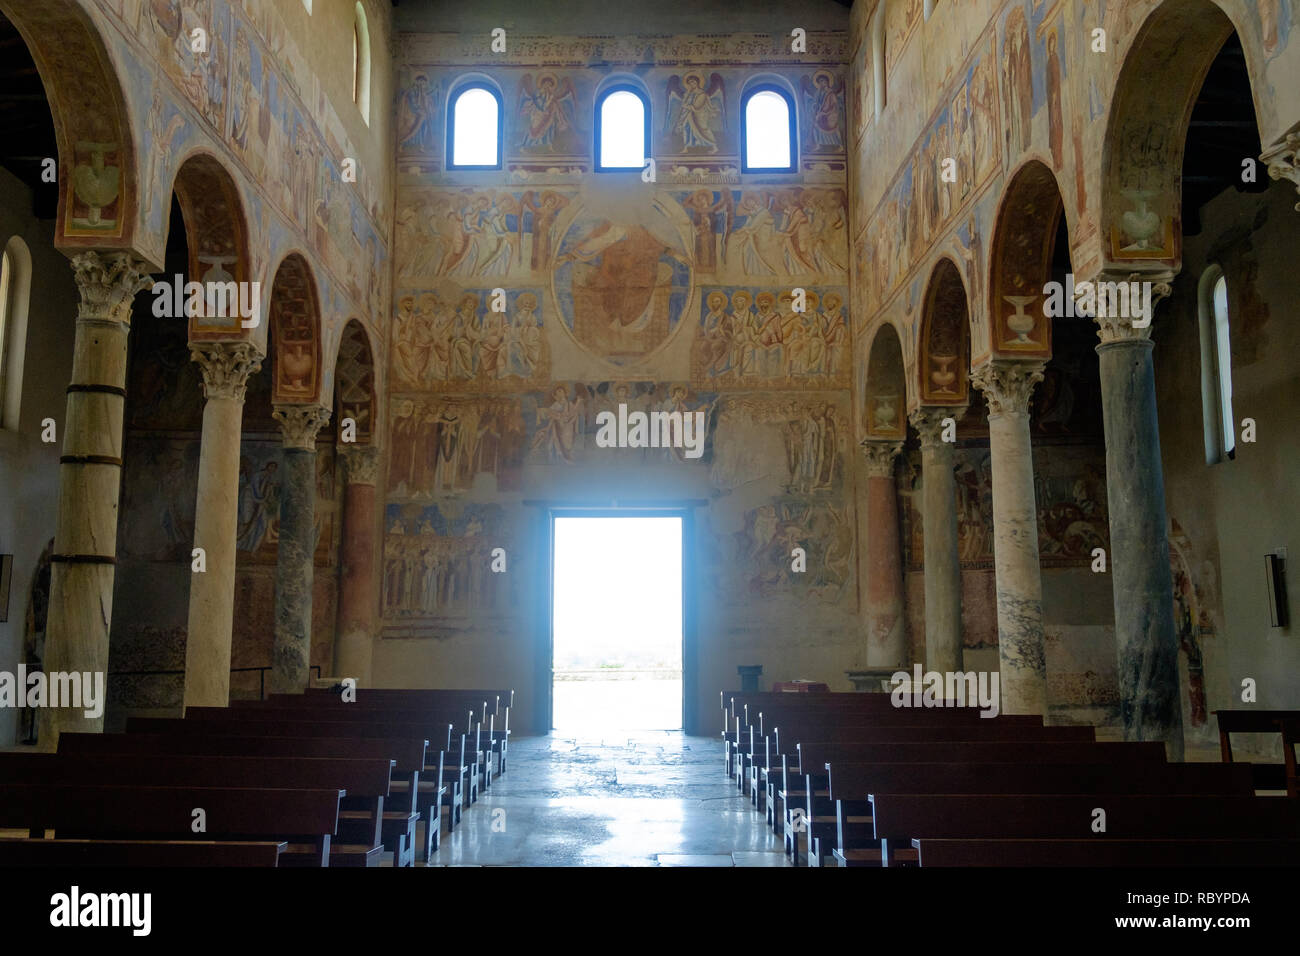 Die Basilika von Ant'Angelo in Die' ist von besonderem historischen Wert. Wenn außerhalb suchen, erhalten Sie diese beeindruckende Aussicht mit wertvollen Fresken. Stockfoto